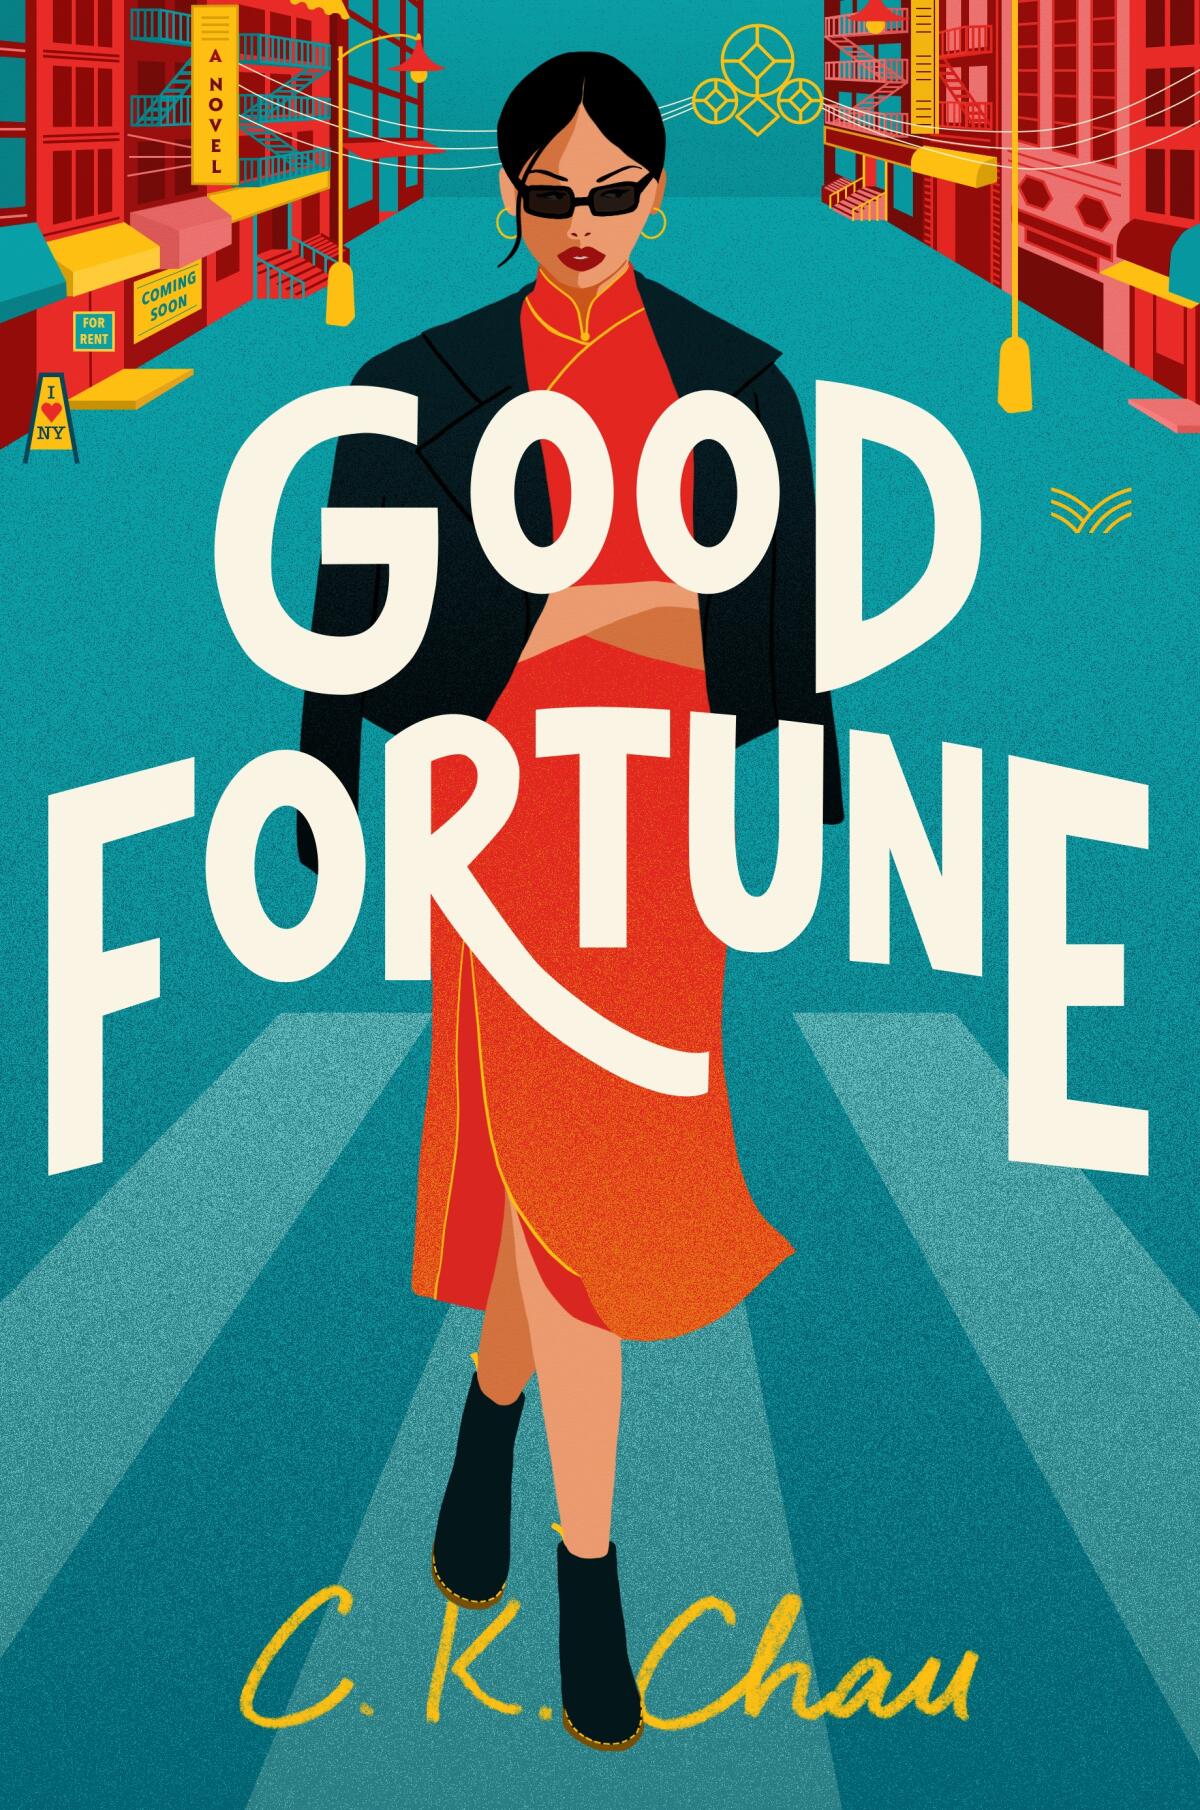 "Good Fortune," by C.K. Chau